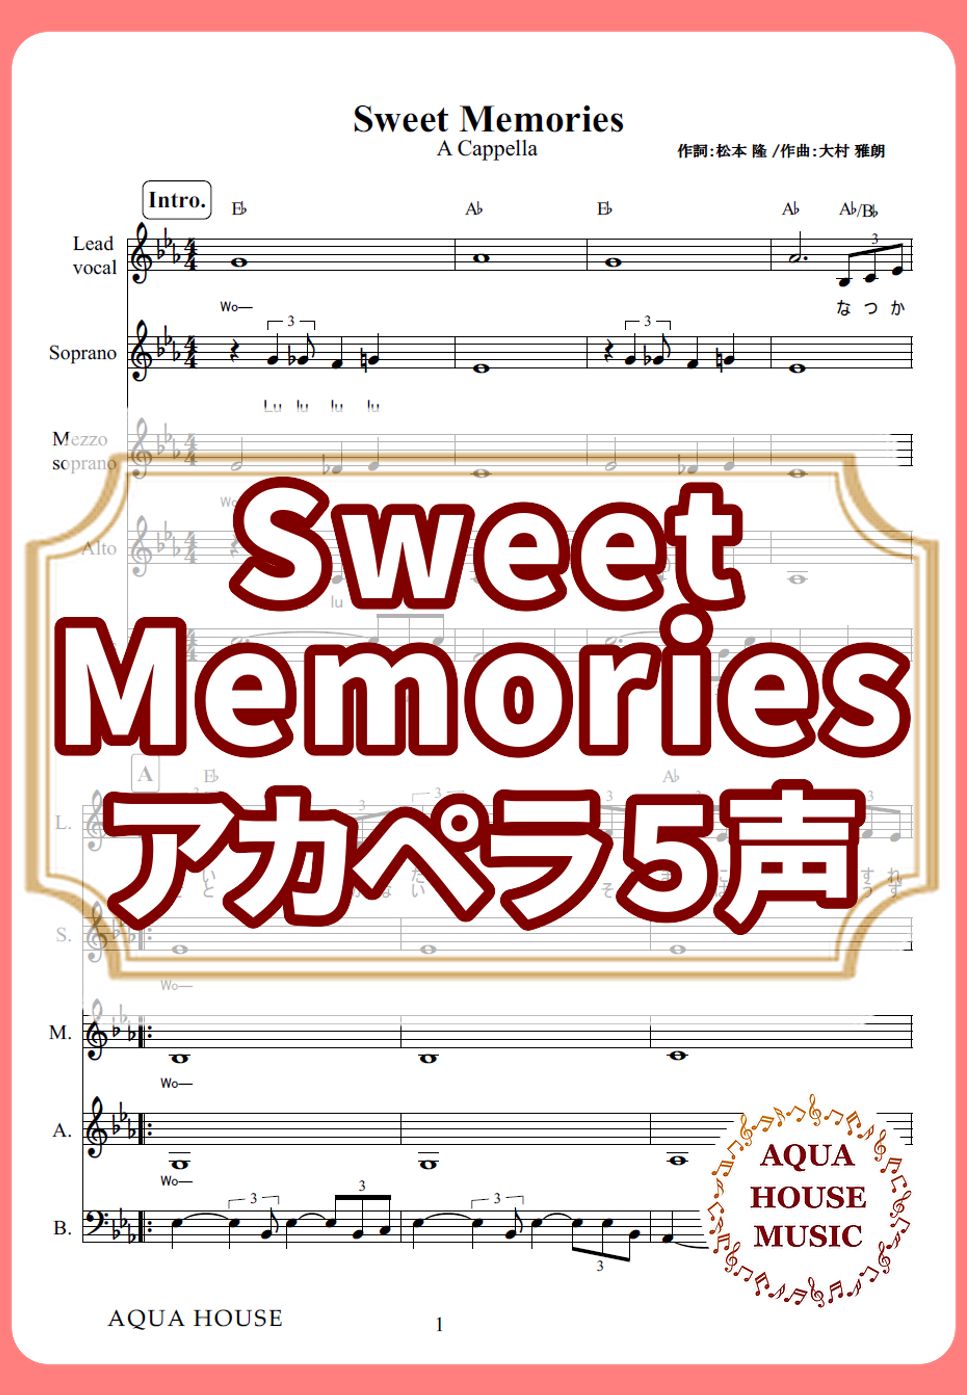 松田 聖子 - Sweet Memories (アカペラ楽譜♪５声ボイパなし) by 飯田 亜紗子